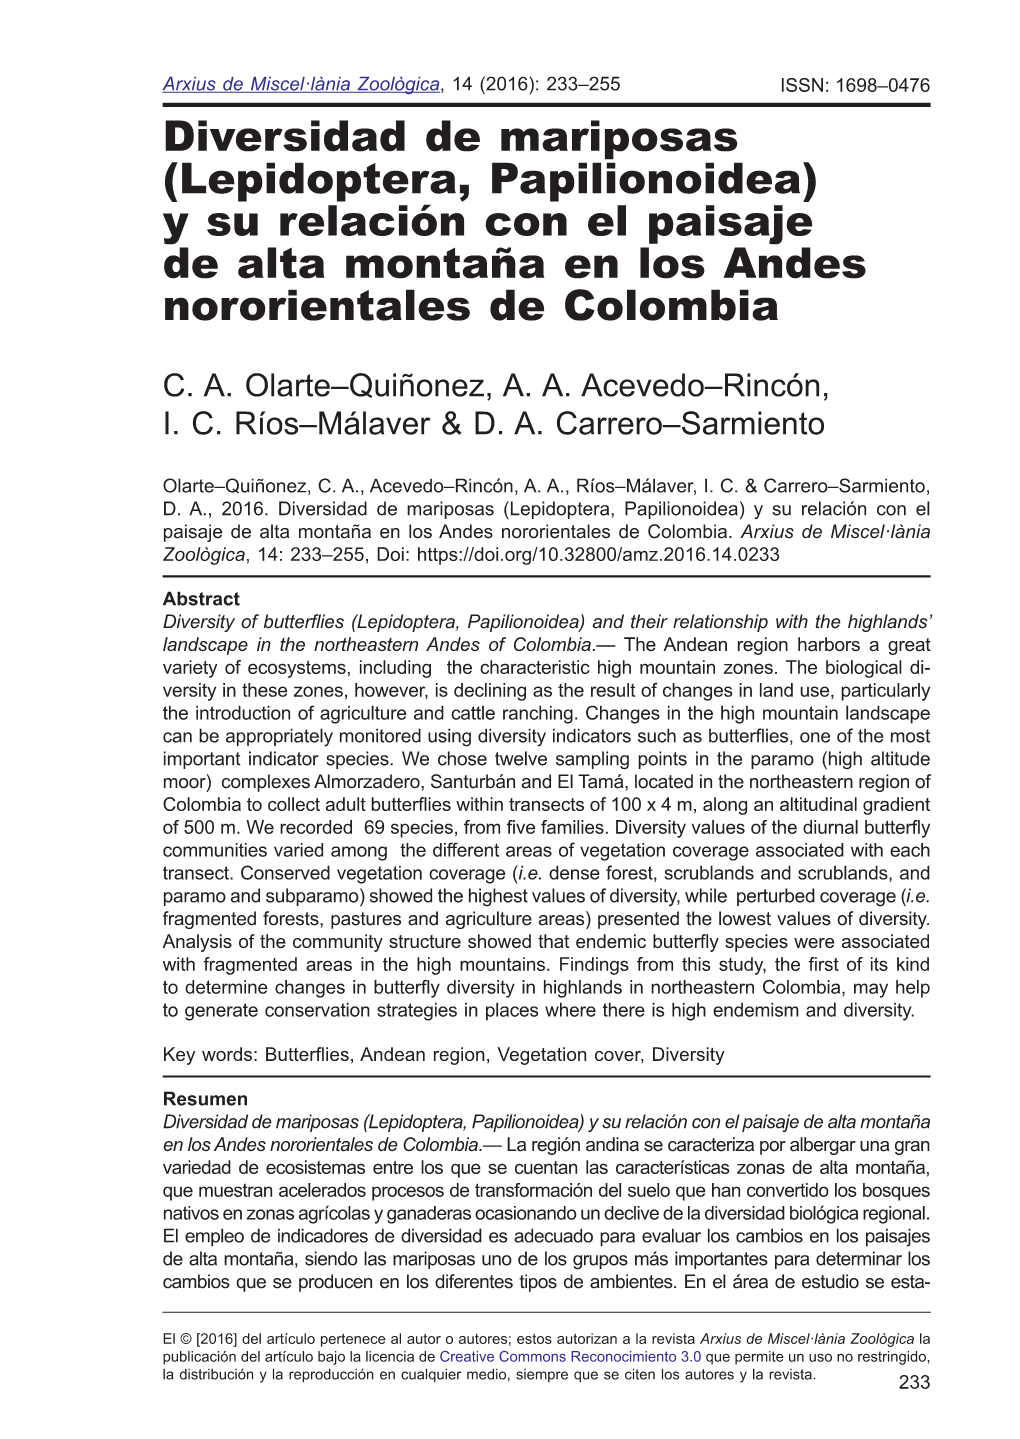 Diversidad De Mariposas (Lepidoptera, Papilionoidea) Y Su Relación Con El Paisaje De Alta Montaña En Los Andes Nororientales De Colombia